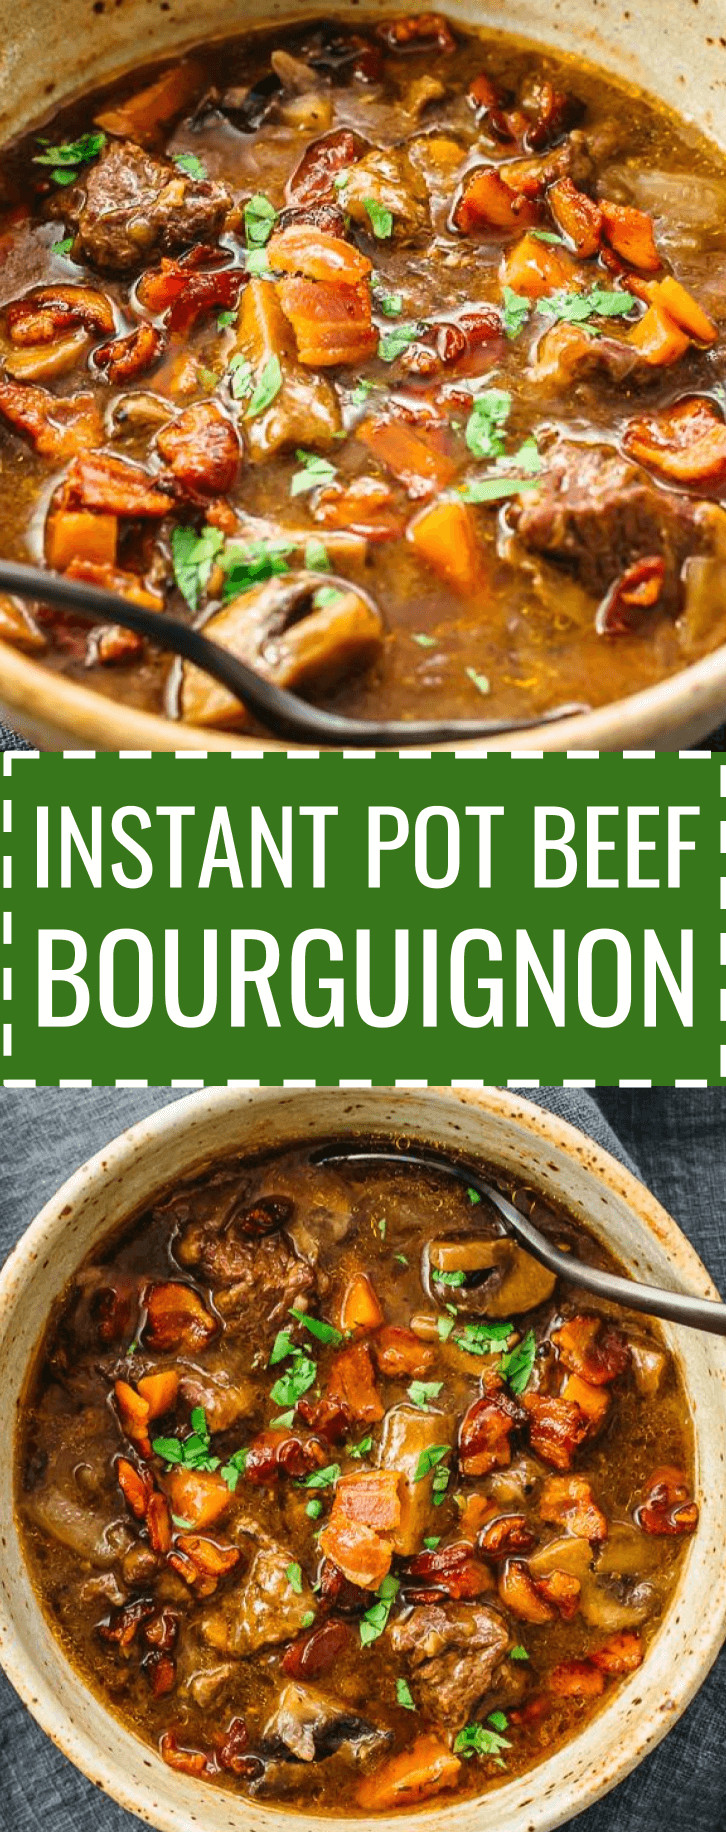 Instant Pot Gourmet Recipes
 A classic gourmet French recipe made easy & simple via